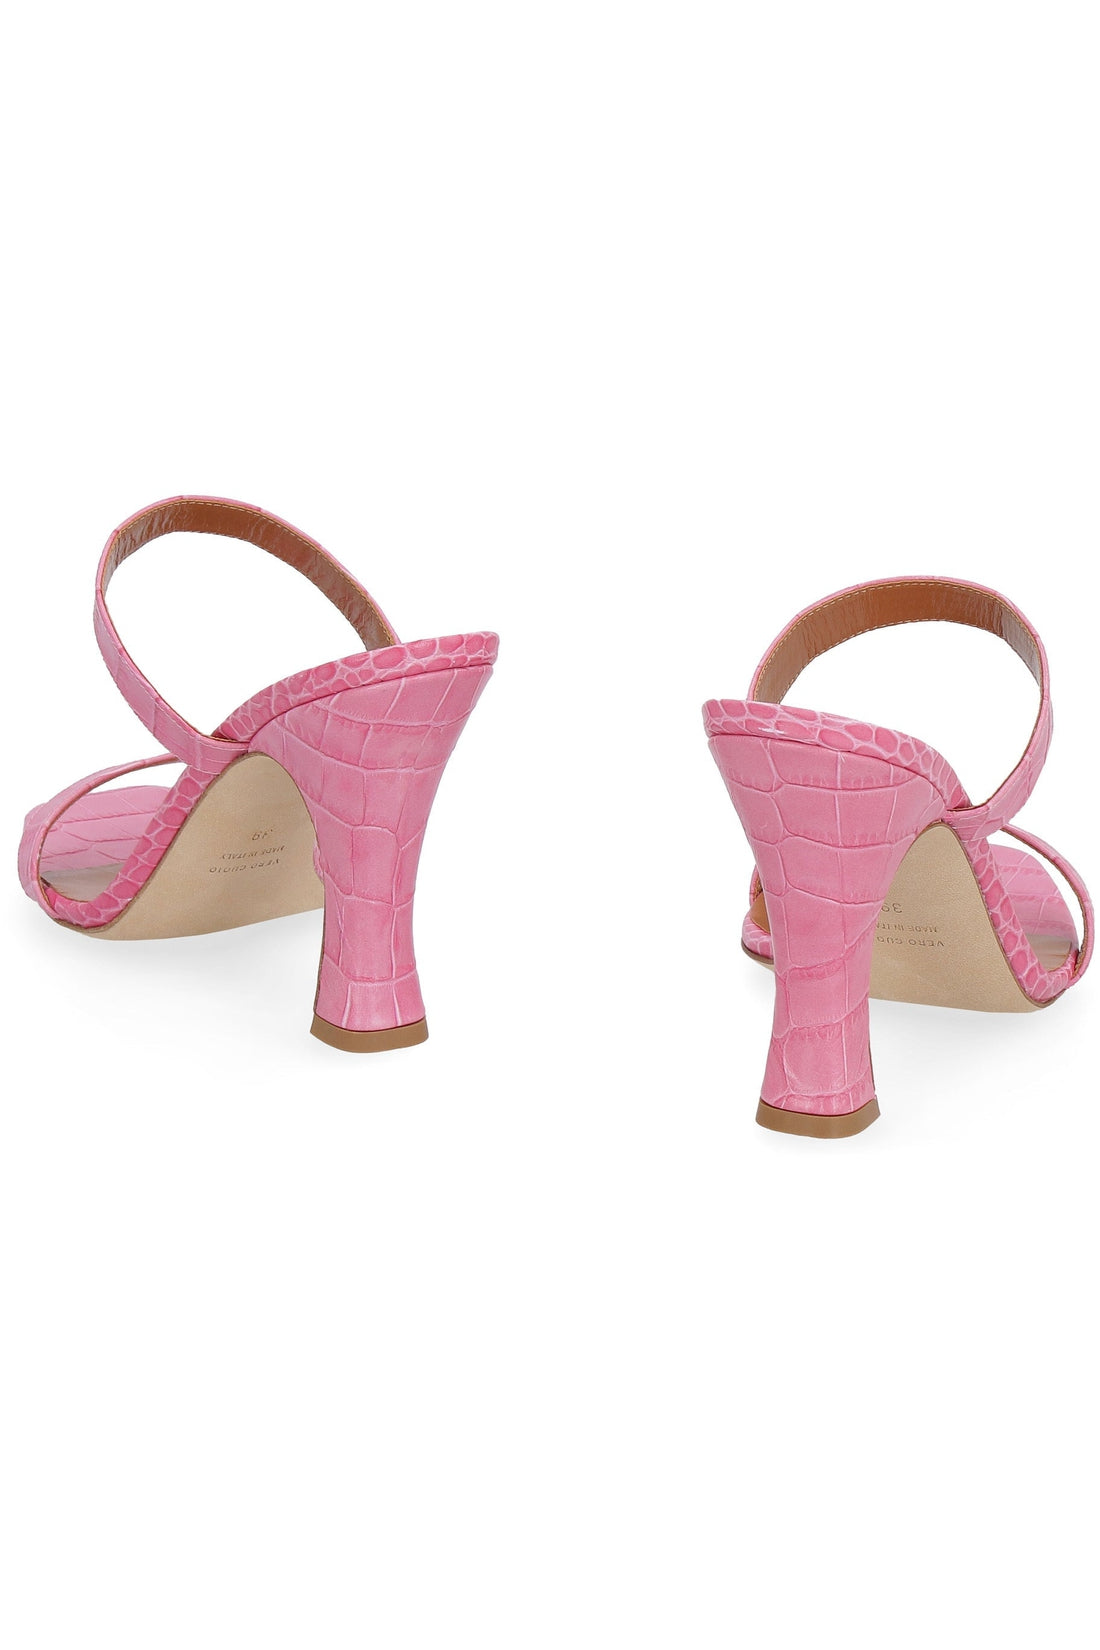 Paris Texas-OUTLET-SALE-Heeled leather sandals-ARCHIVIST